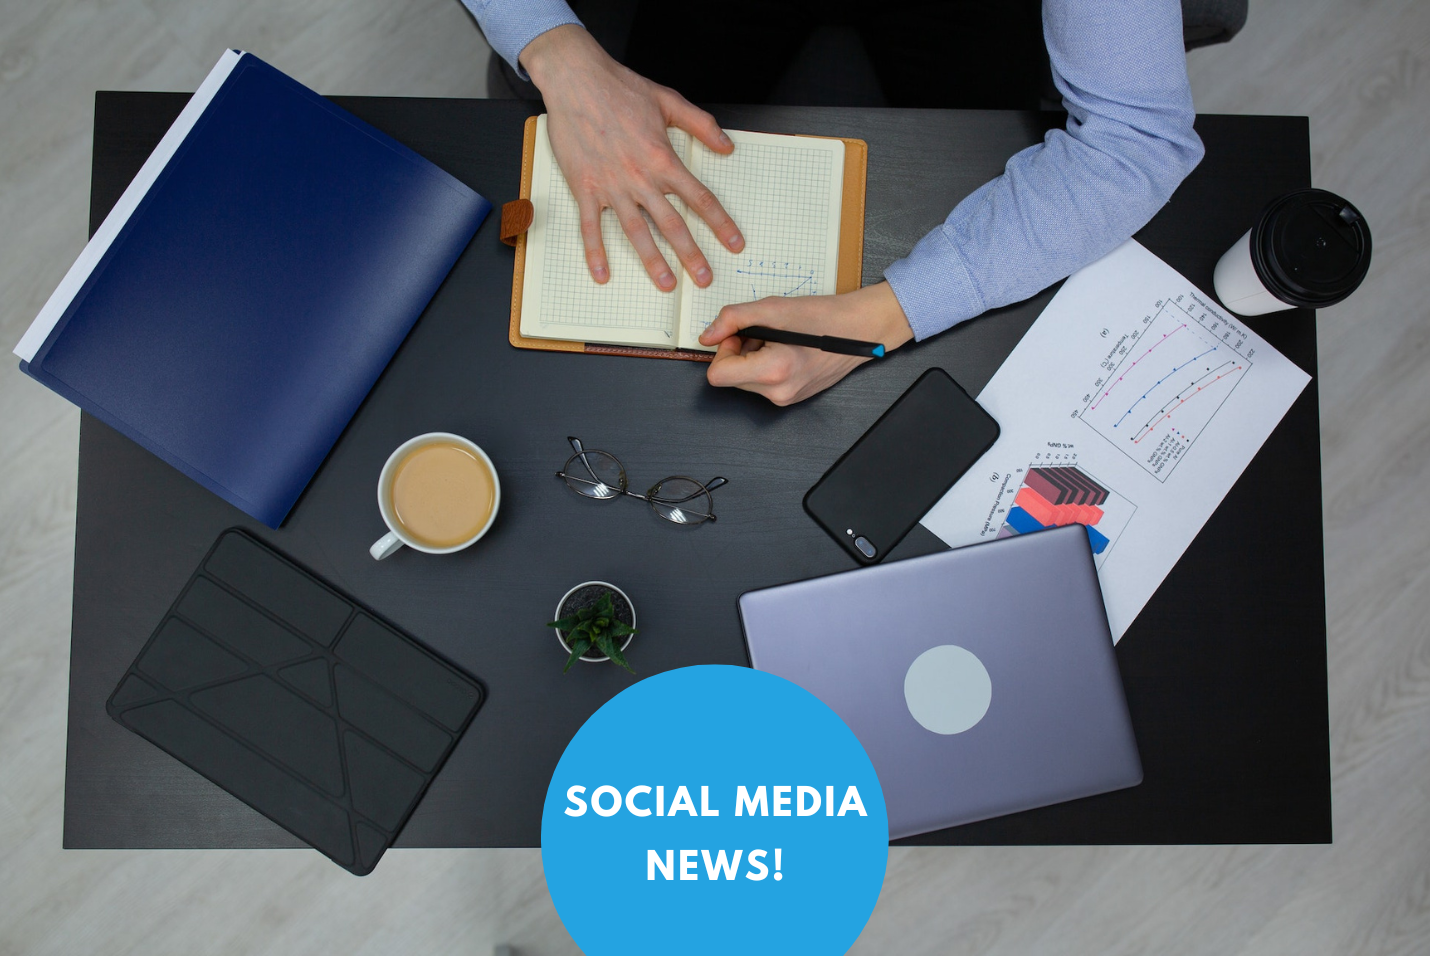 social media news; social media management; creator; social media manager; gestione canali social; tool per la pubblicazione sui social media